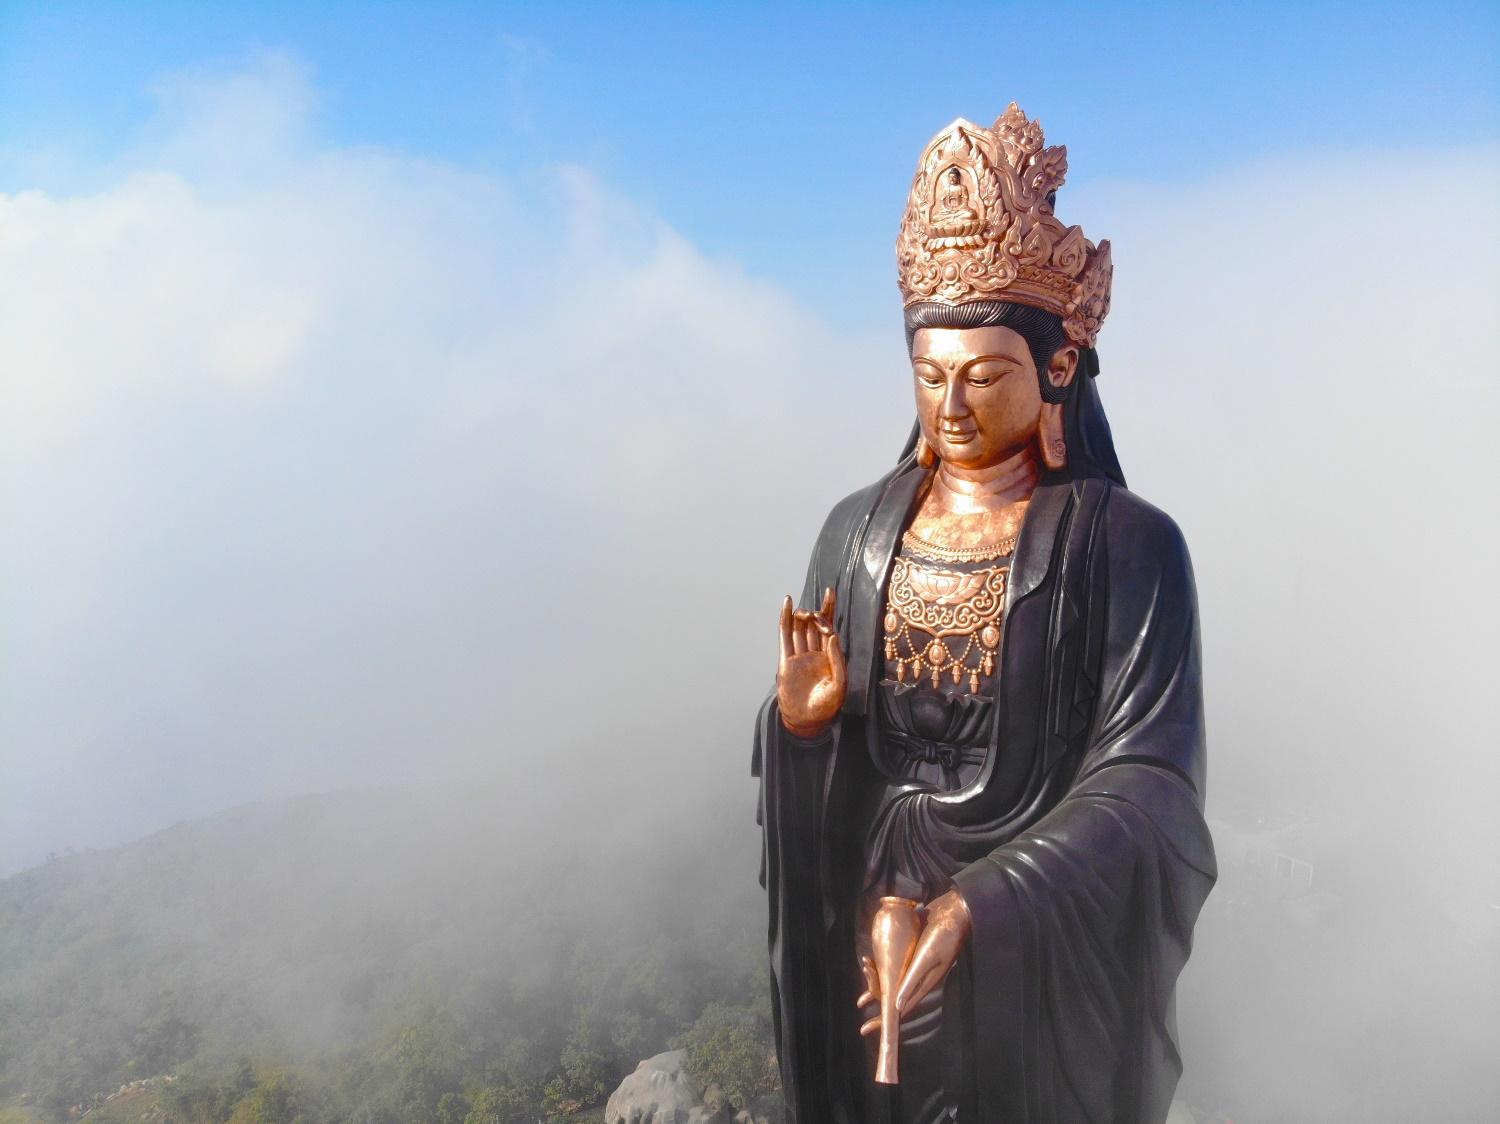 Khám phá ượng Phật Bà bằng đồng cao nhất Châu Á trên đỉnh Bà Đen - 1